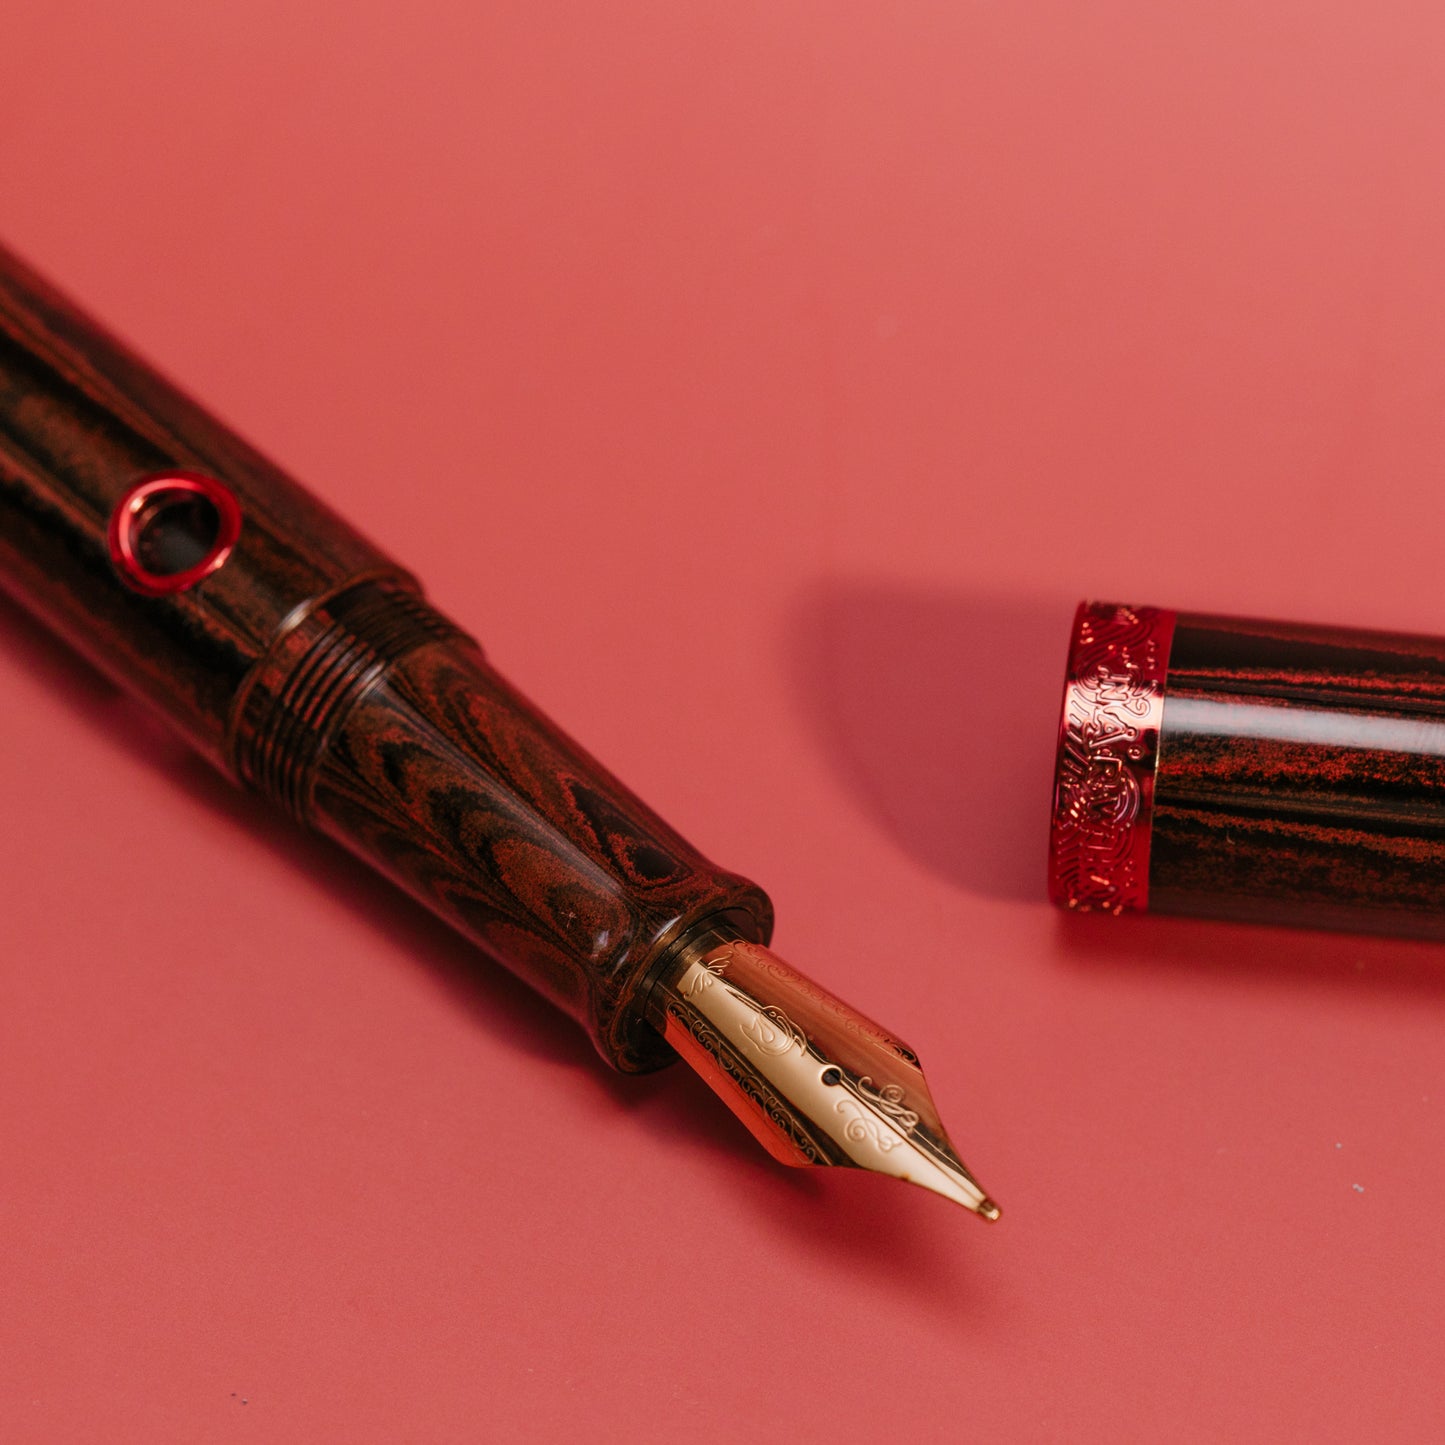 
                  
                    Nahvalur Nautilus Ruby Koi Fountain Pen
                  
                